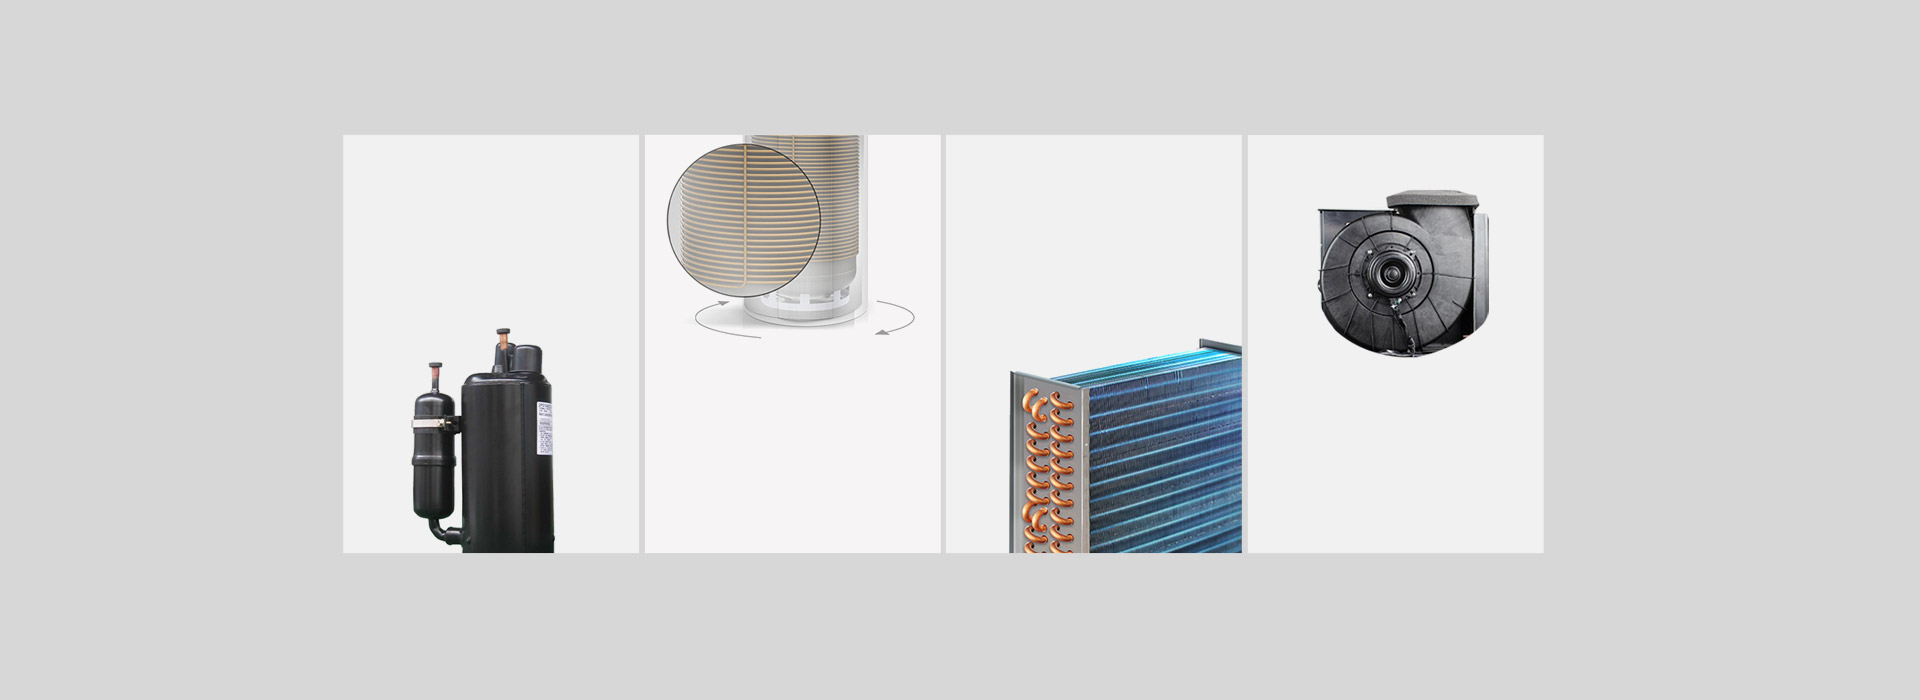 芬尼空气能热水器豪华型200L核心部件